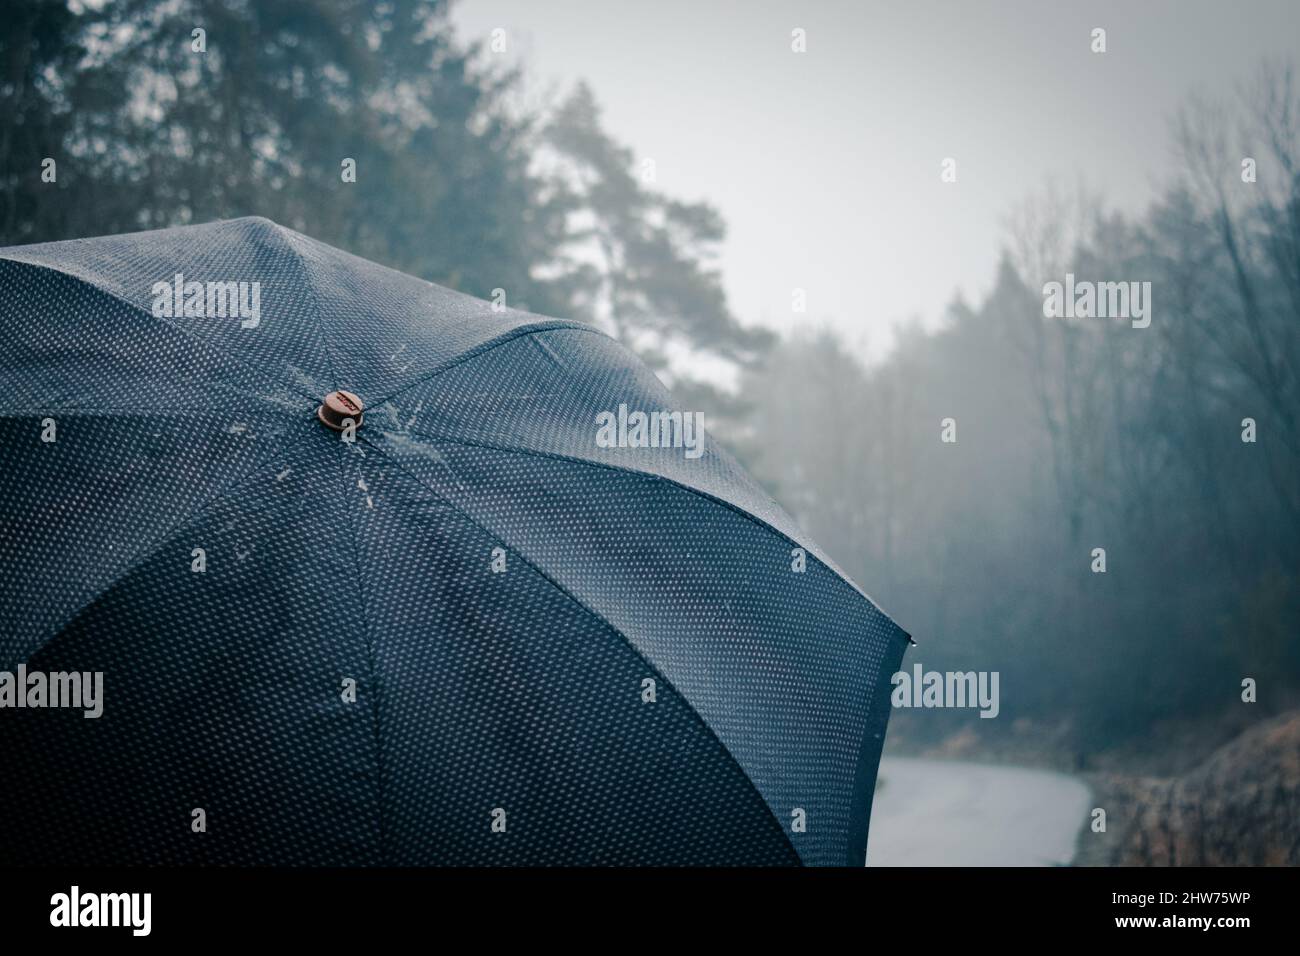 Schöne Aufnahme einer Person, die einen Regenschirm unter dem Regen in einem Wald hält Stockfoto